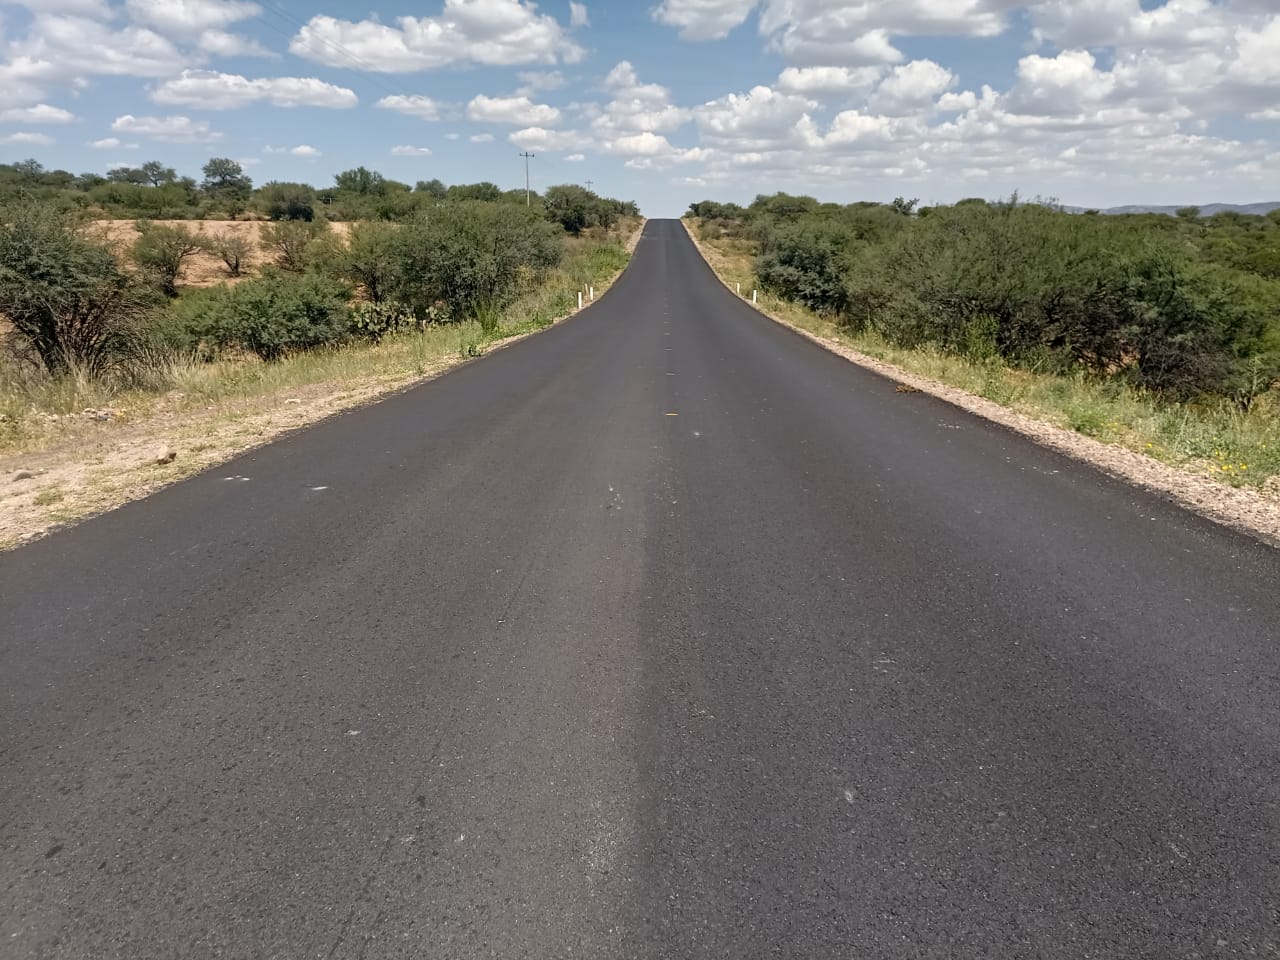 Reconstrucción de la carretera Villanueva-El Plateado de Joaquín Amaro para garantizar la circulación segura de los habitantes de la región